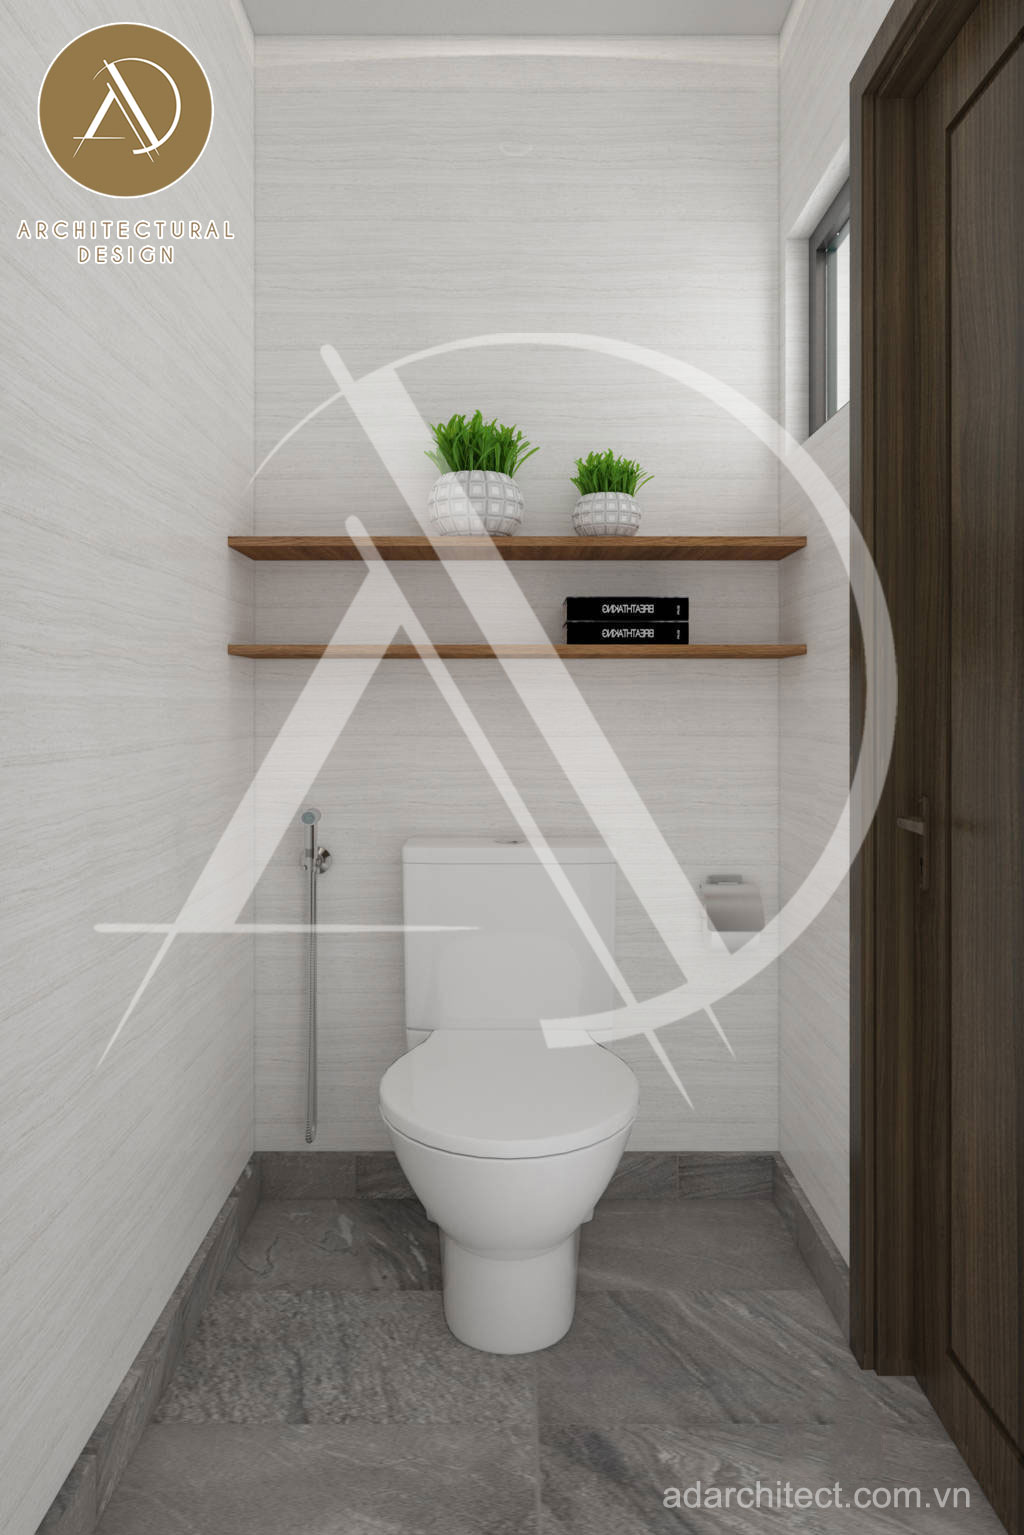 Thiết kế nhà vệ sinh mẫu nhà 3 tầng hiện đại